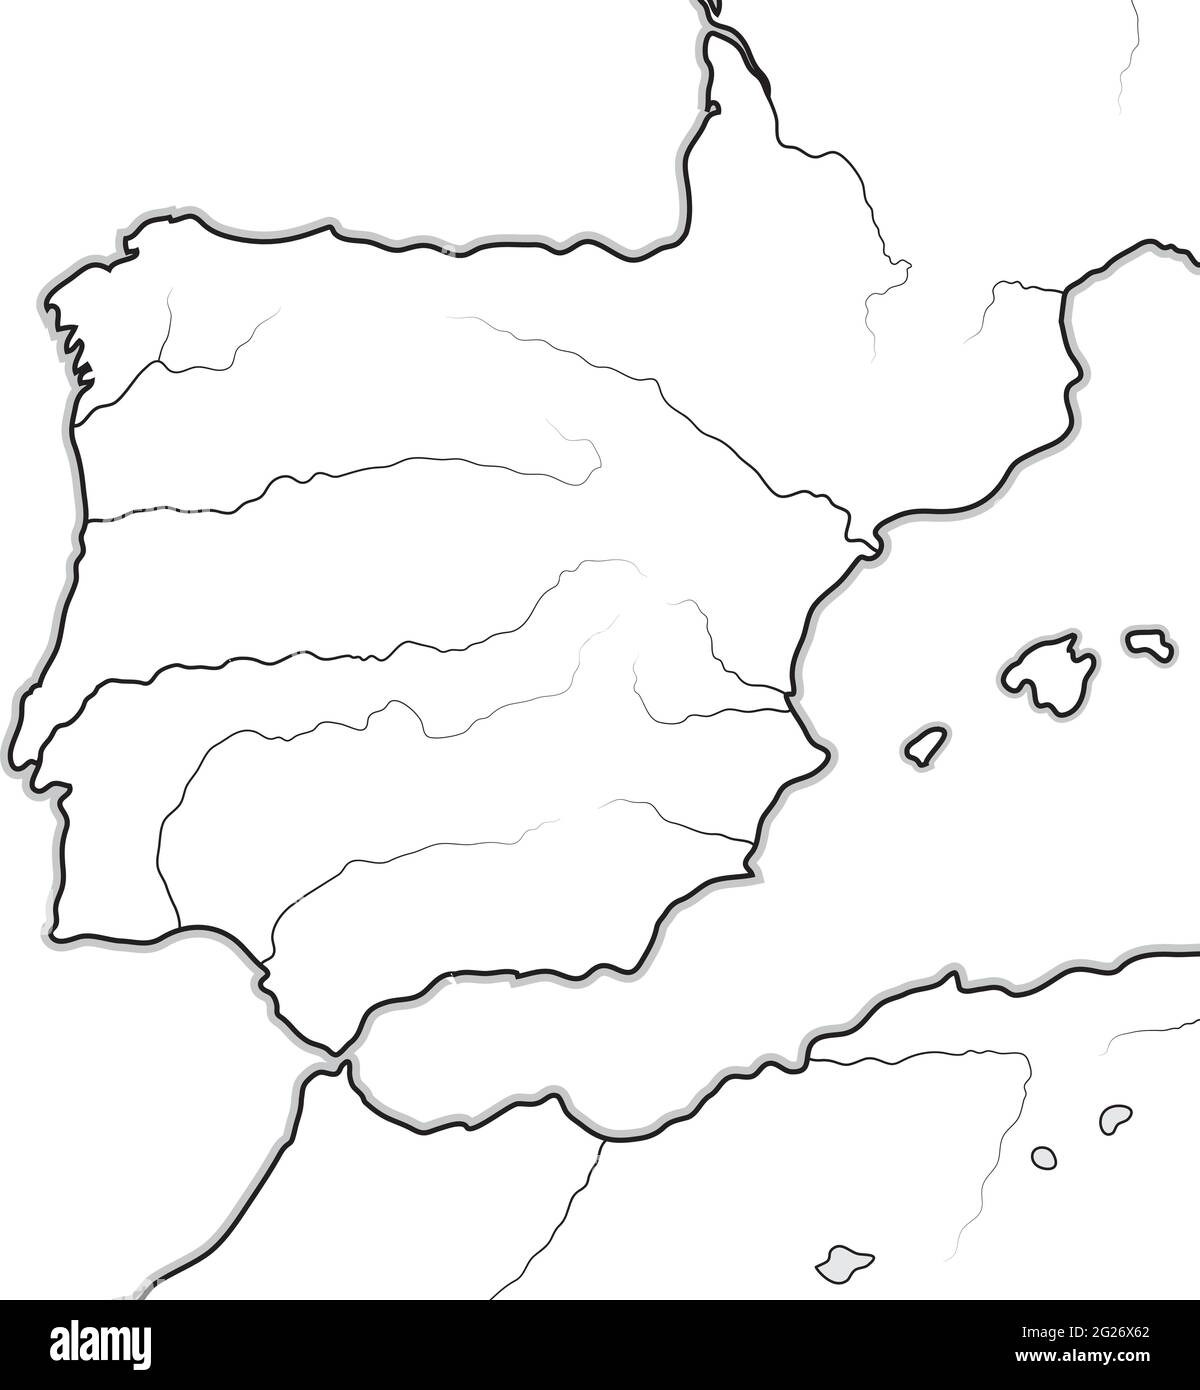 Mappa DELLE terre SPAGNOLE: Spagna, Portogallo, Catalogna, Iberia, i Pirenei. Grafico geografico. Illustrazione Vettoriale